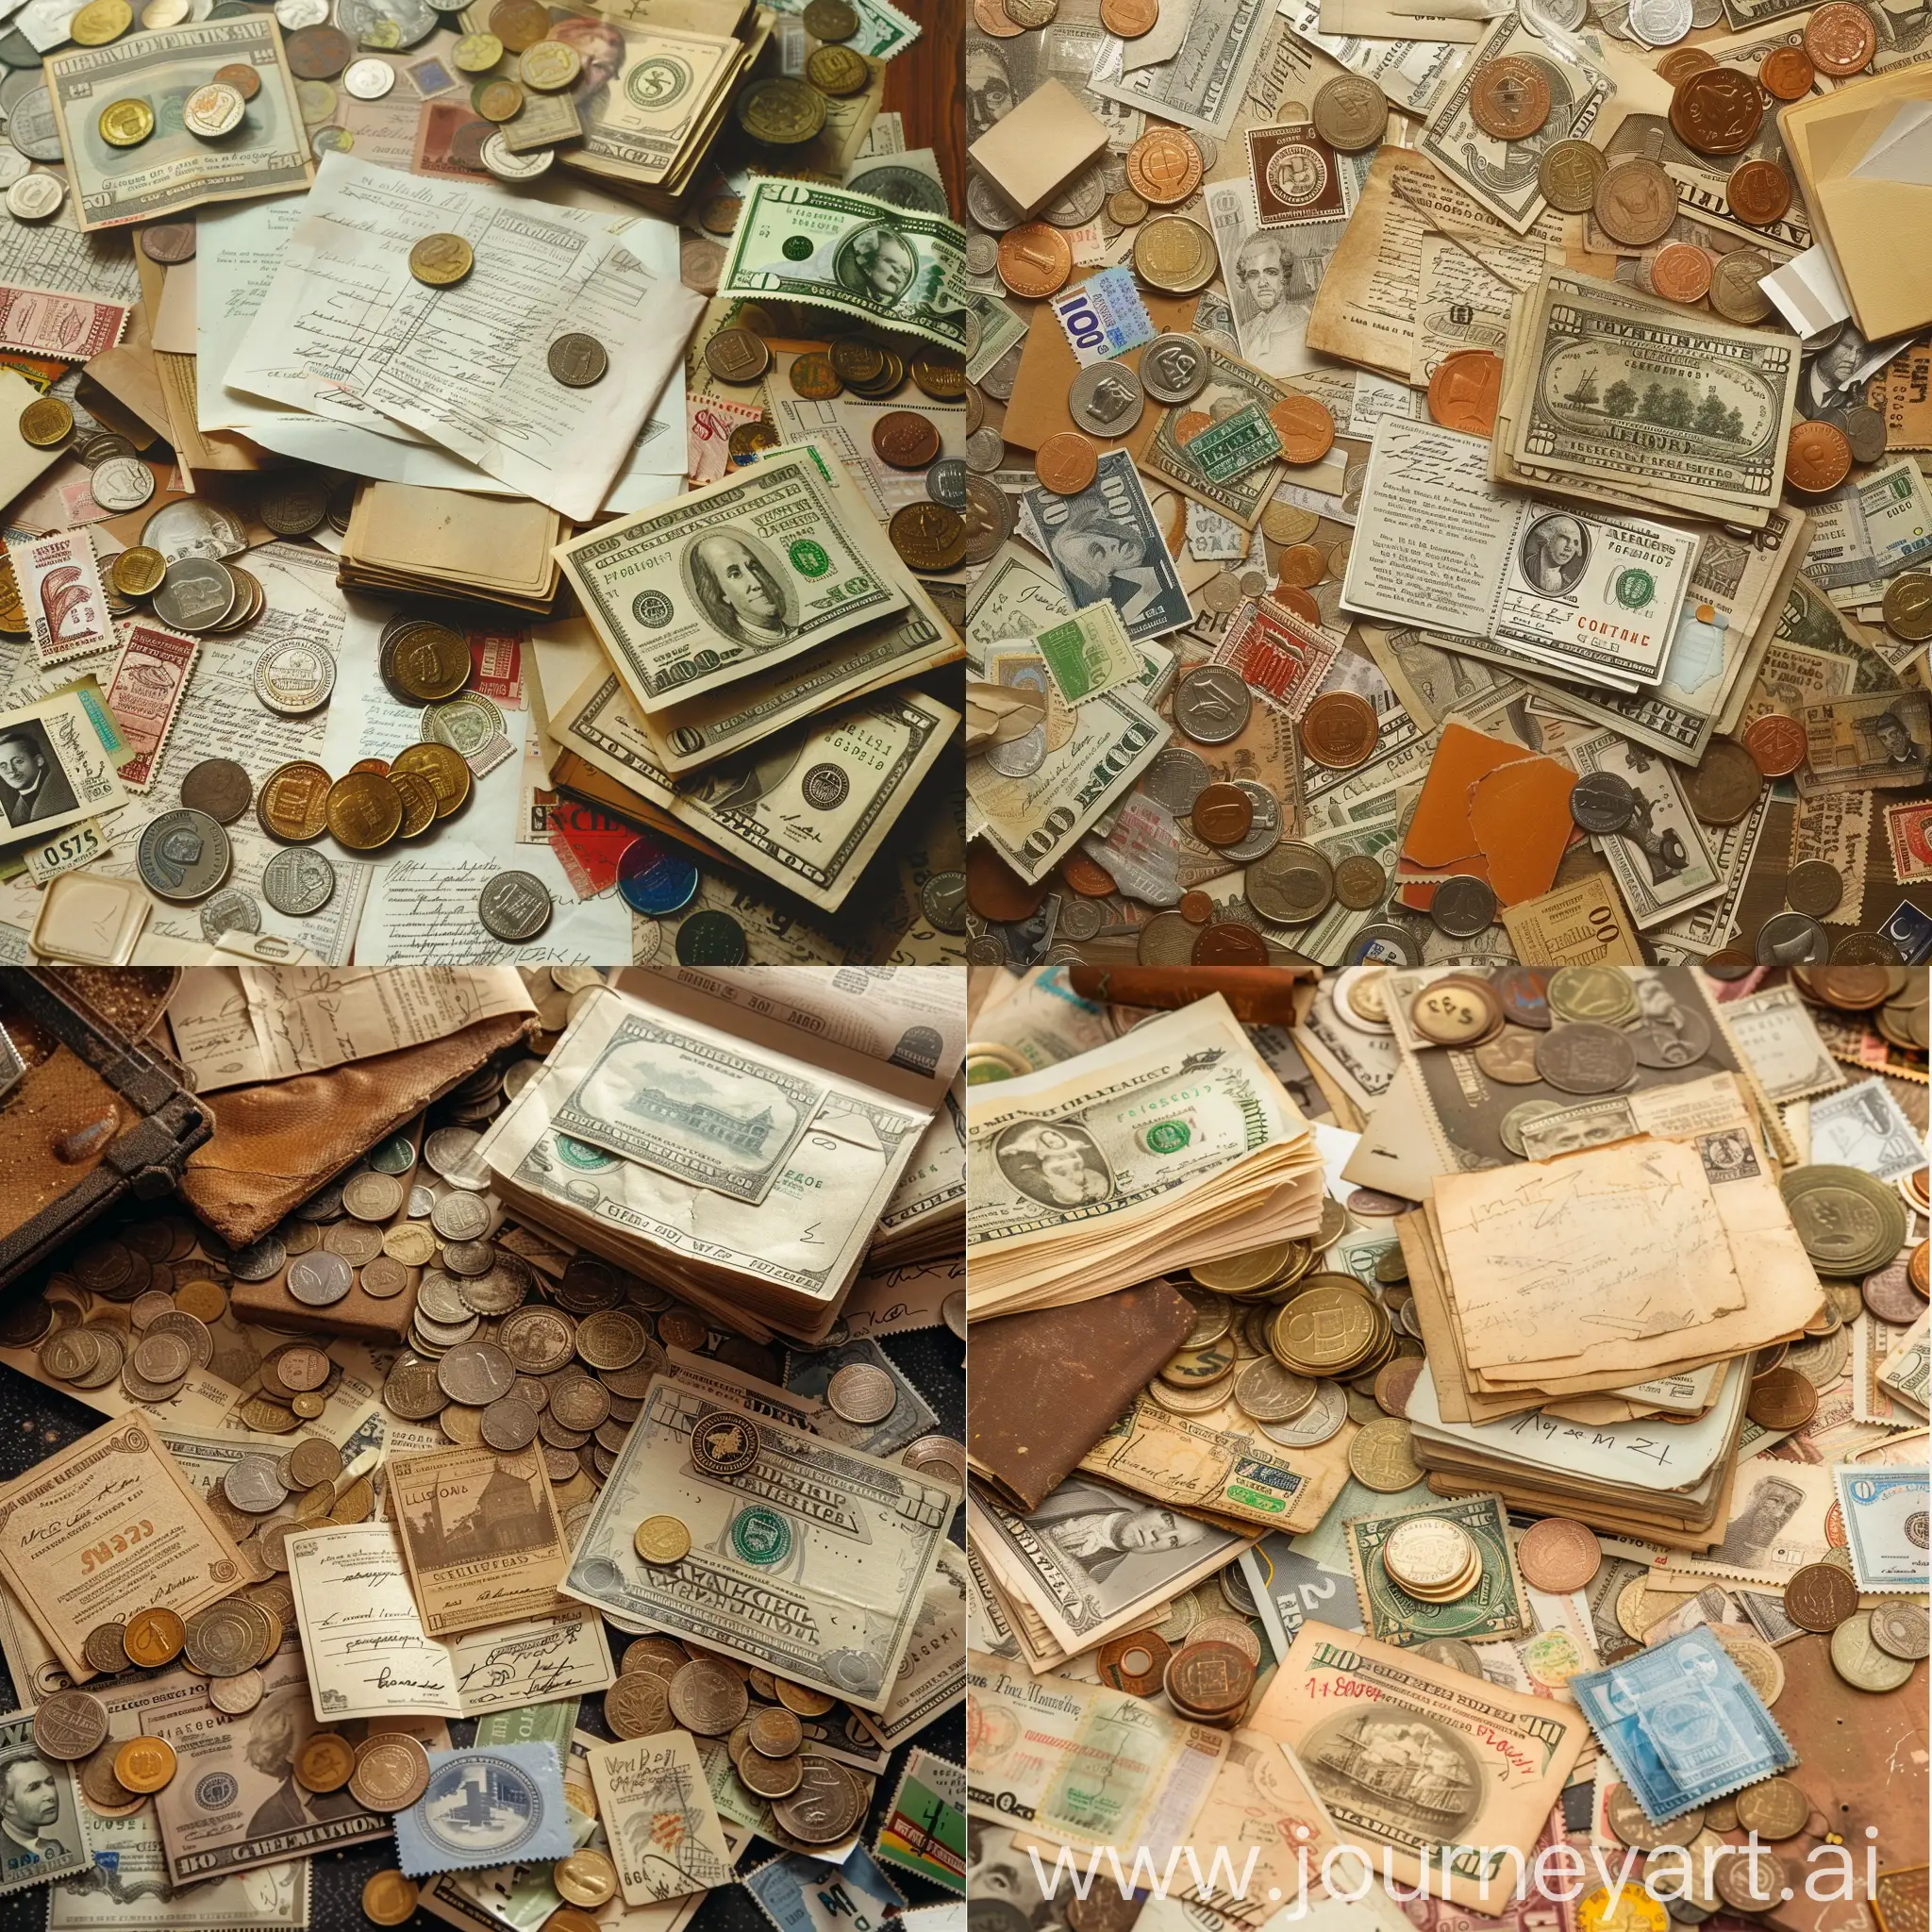 композиция завод старые деньги и монеты документы и почтовые марки хаотично размещены на картине